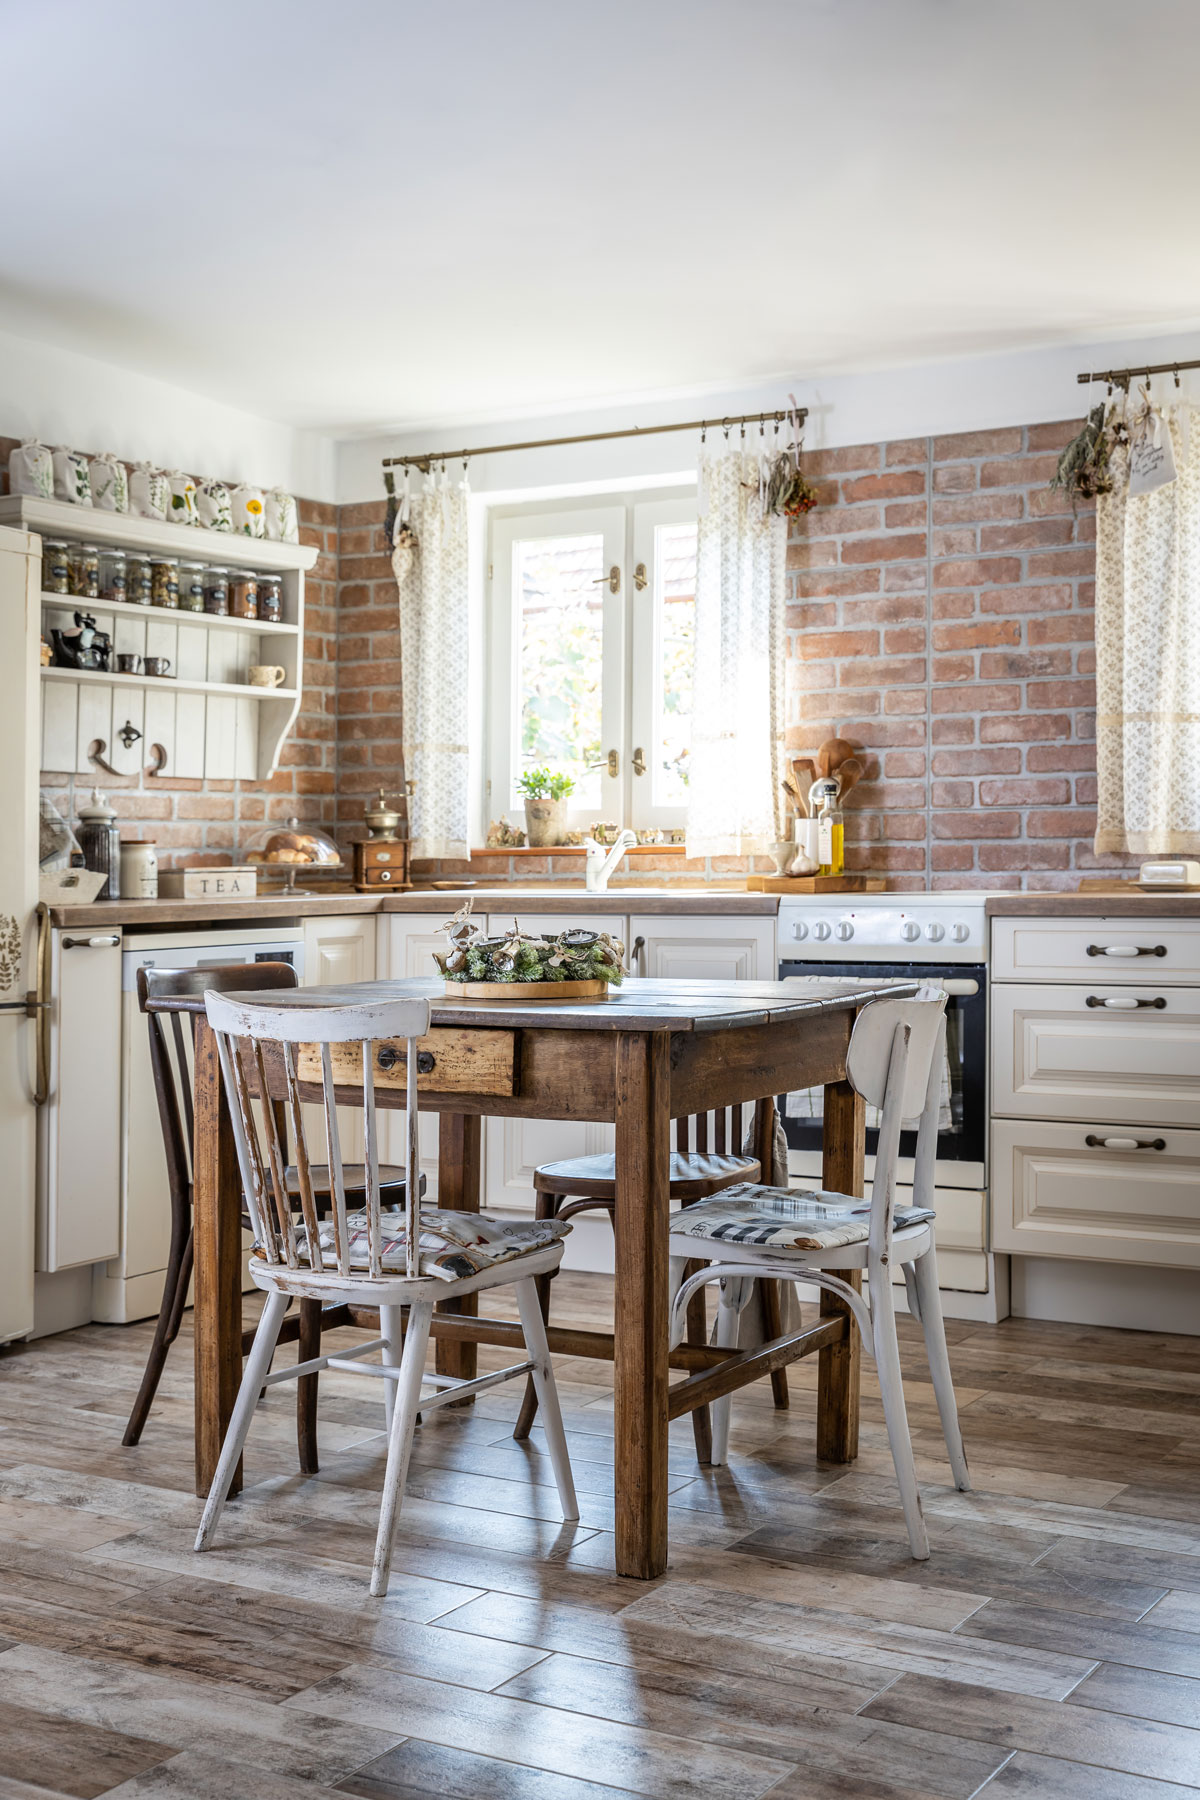 venkovská kuchyň so světlou kuchyňskou linkou, cihlovým obkladem na stěně a podlahou s imitací dřeva